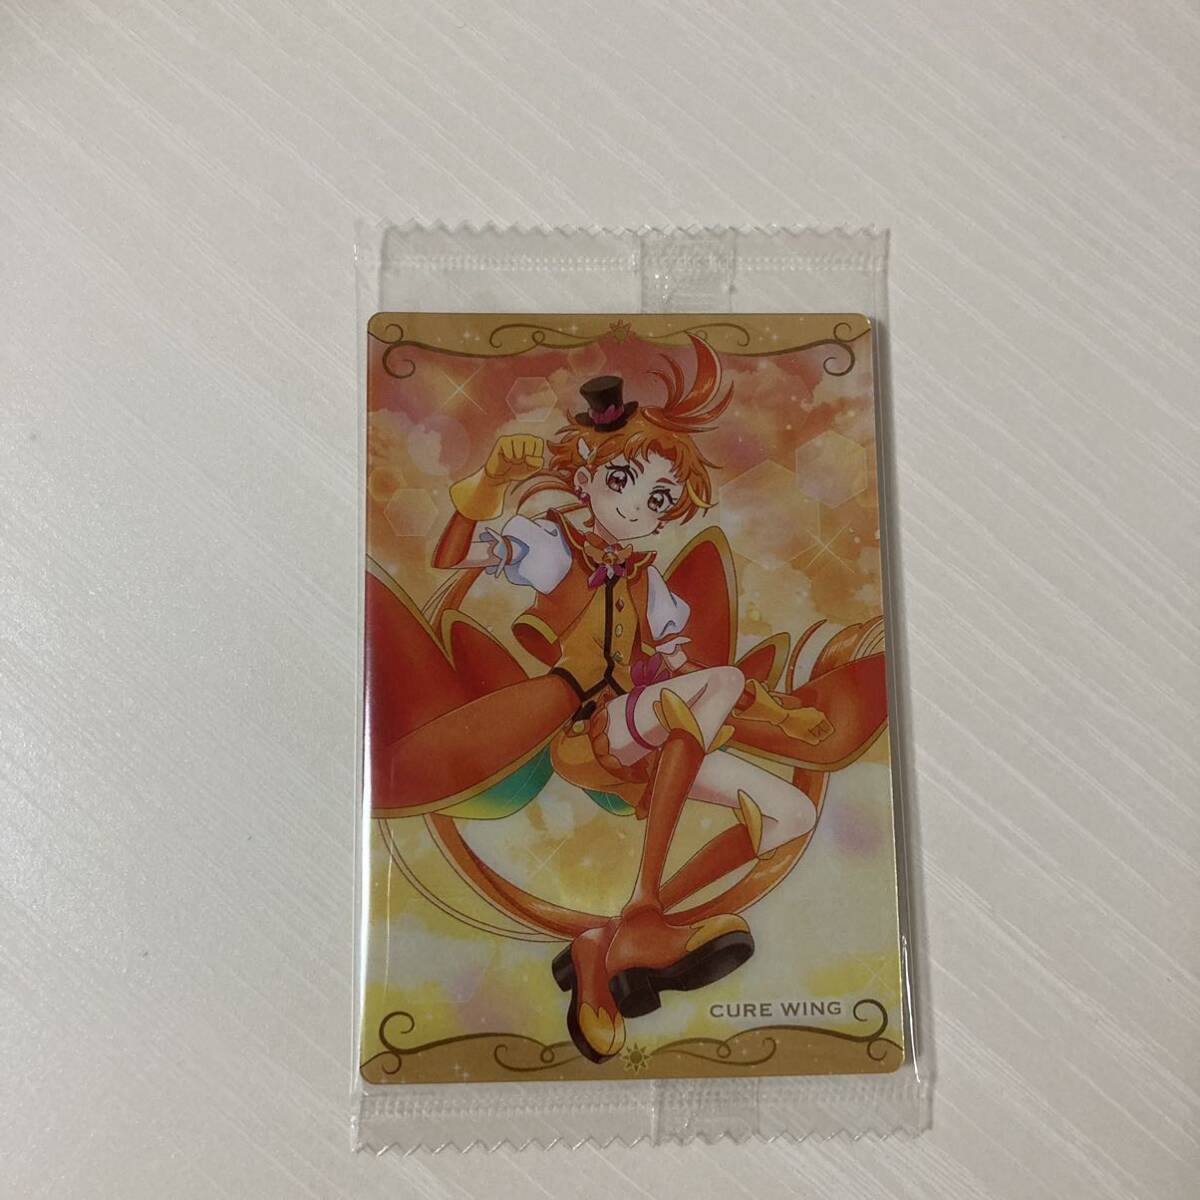 プリキュア カード ウエハース9 ひろがるスカイプリキュア キュアウィング_画像1